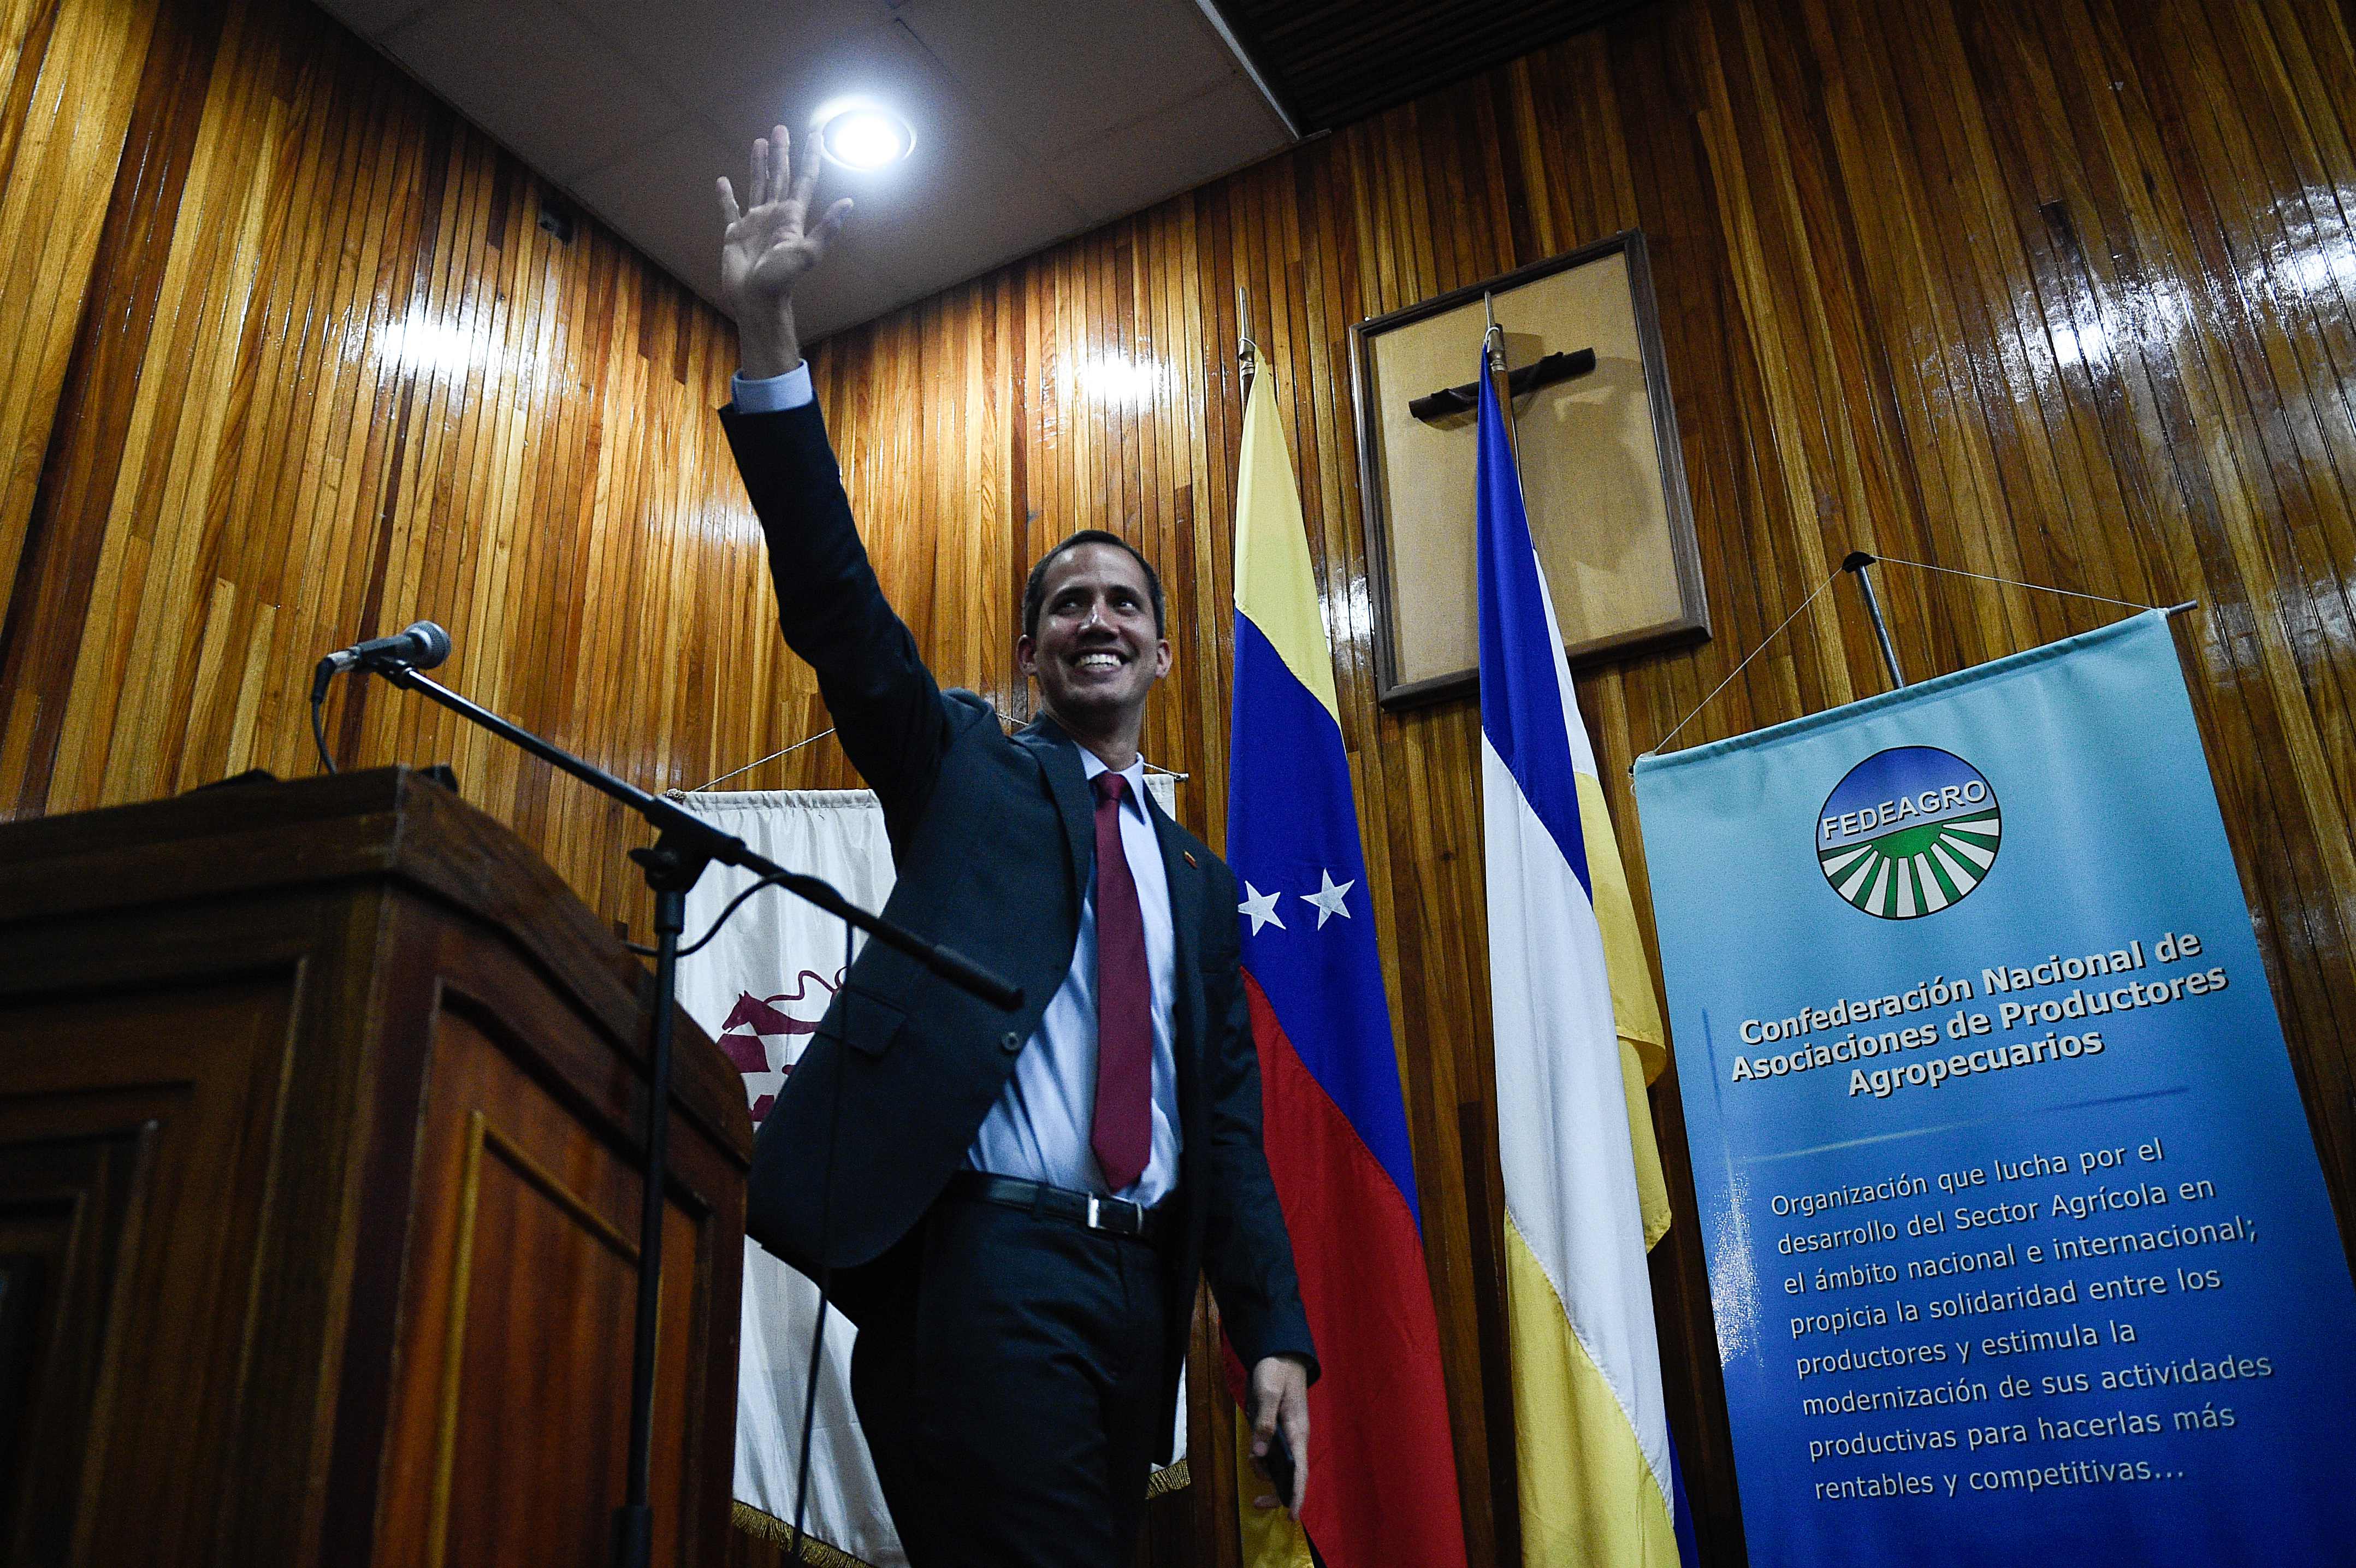 Guaidó, autoproclamado presidente em exercício, acena após reunião com produtores agrícolas da nação